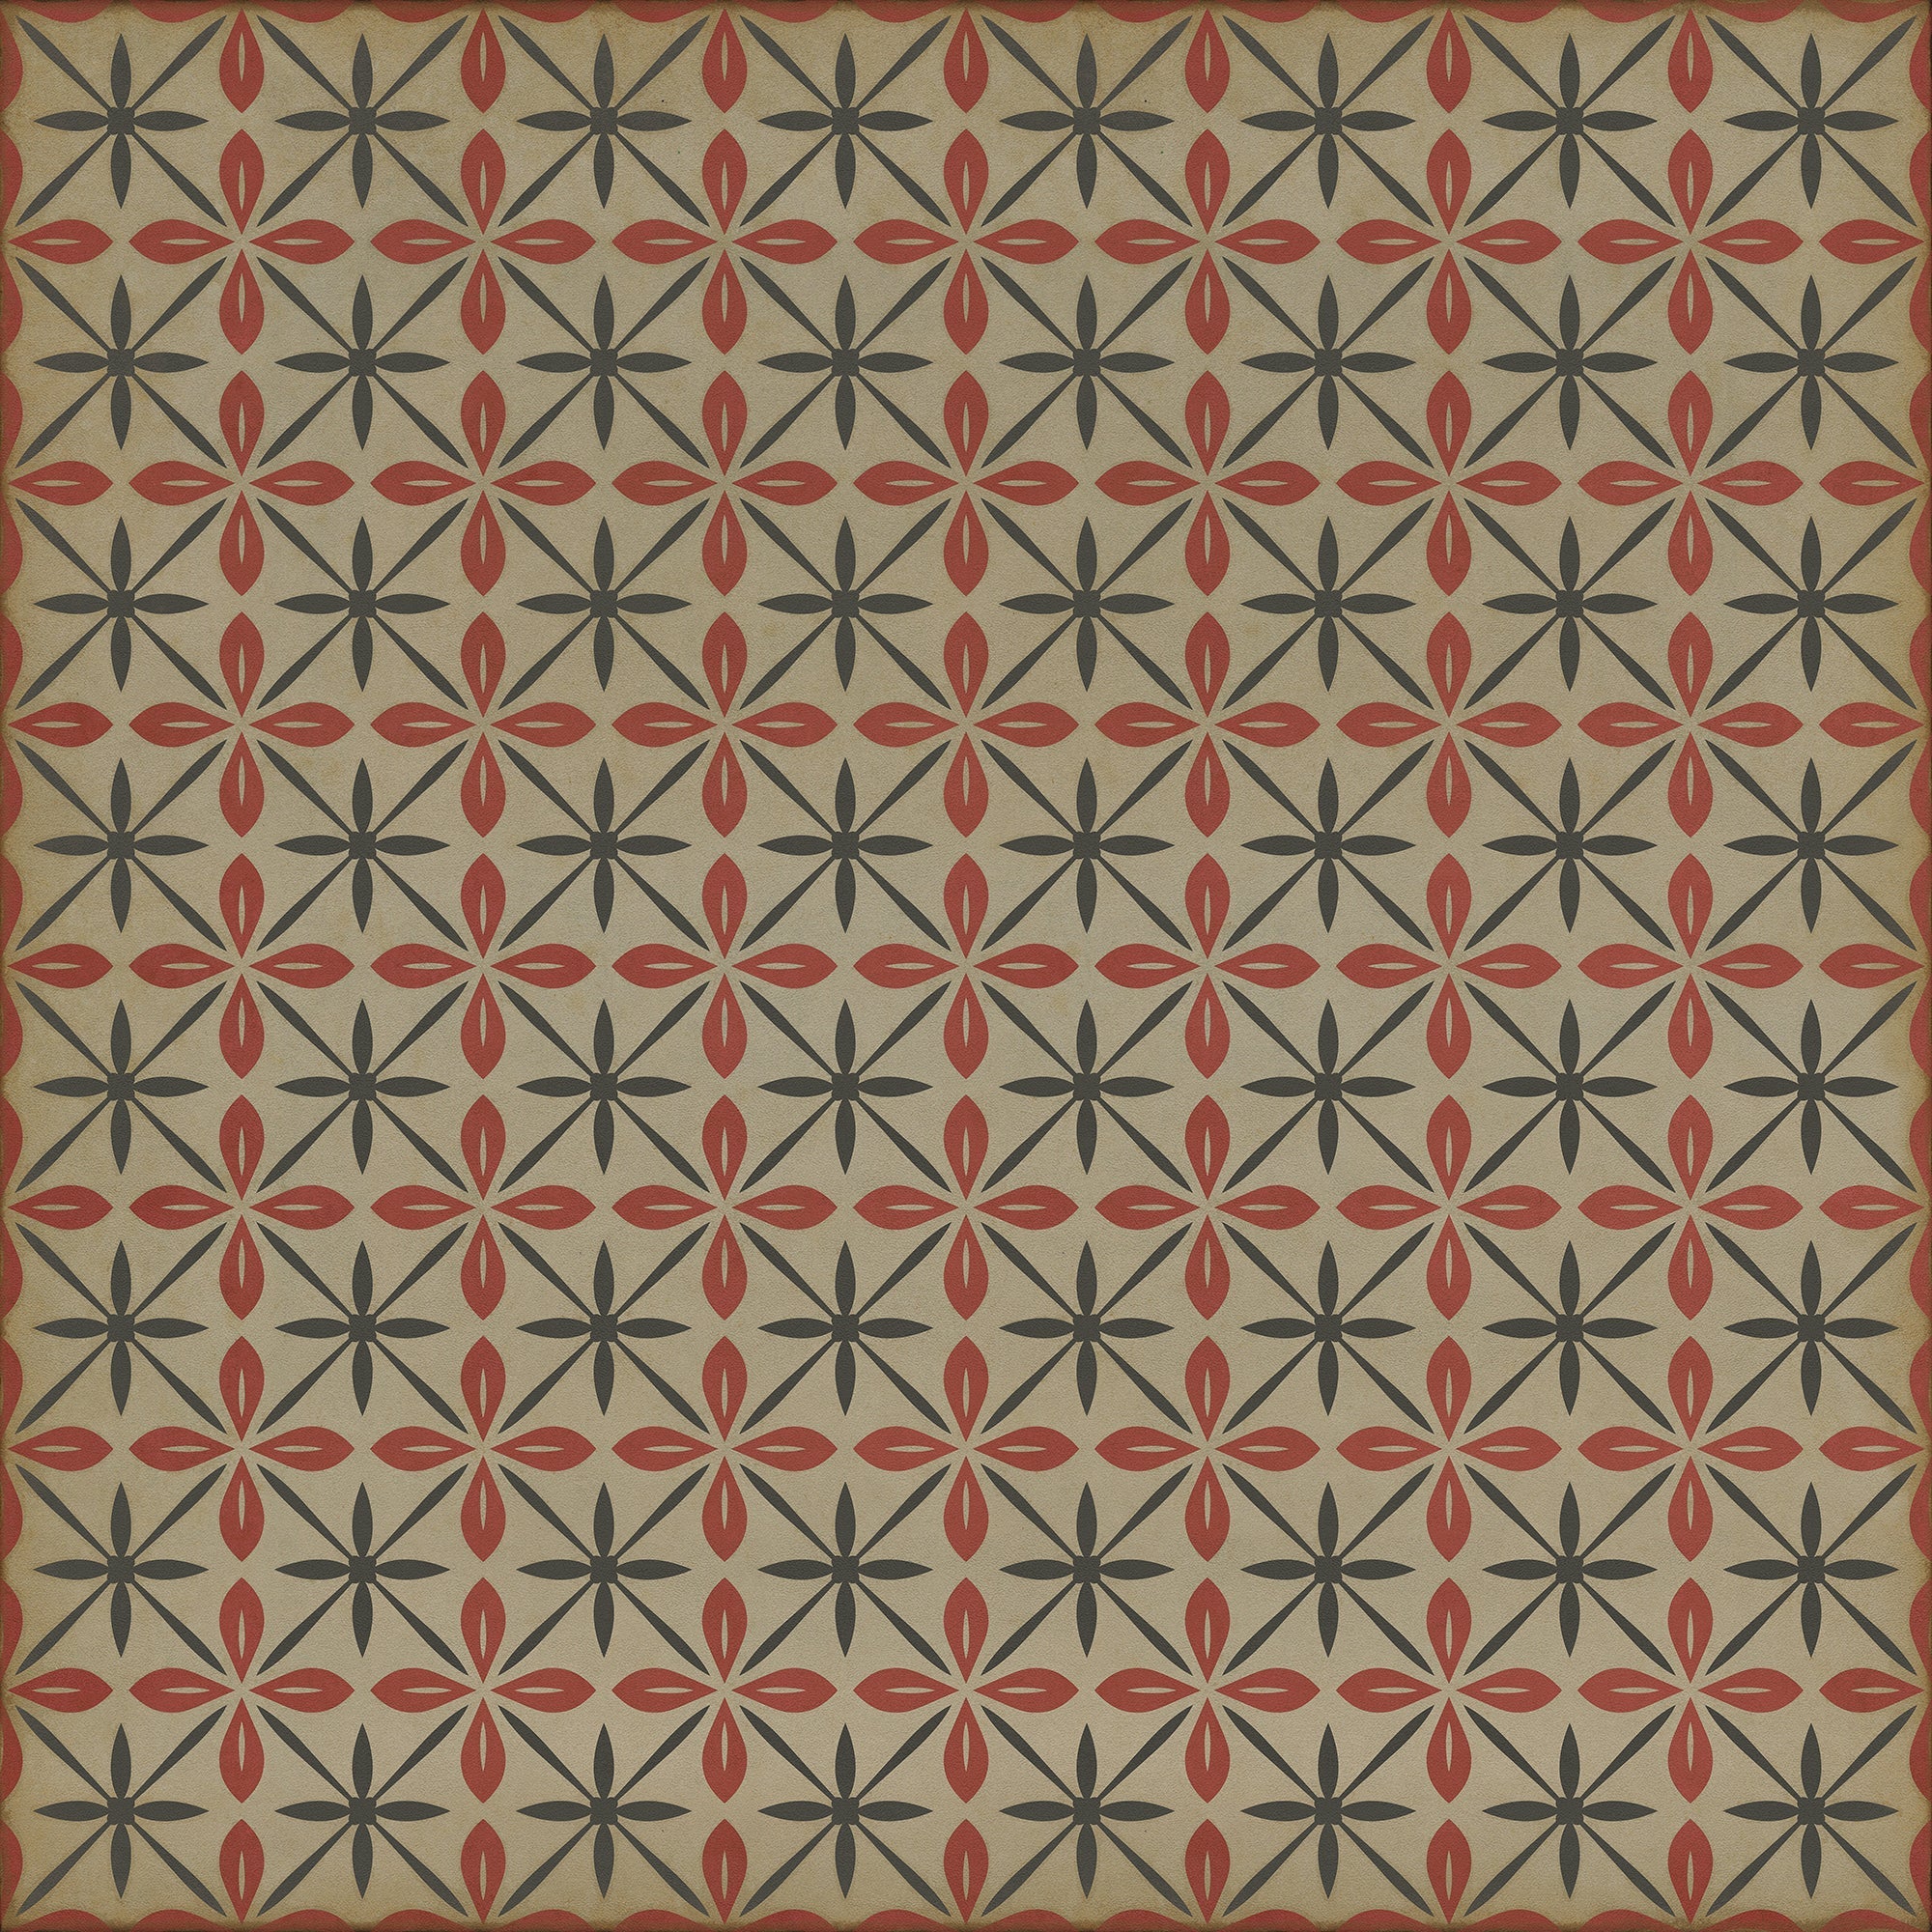 Pattern 81 the Soda Jerk Vinyl Floor Cloth